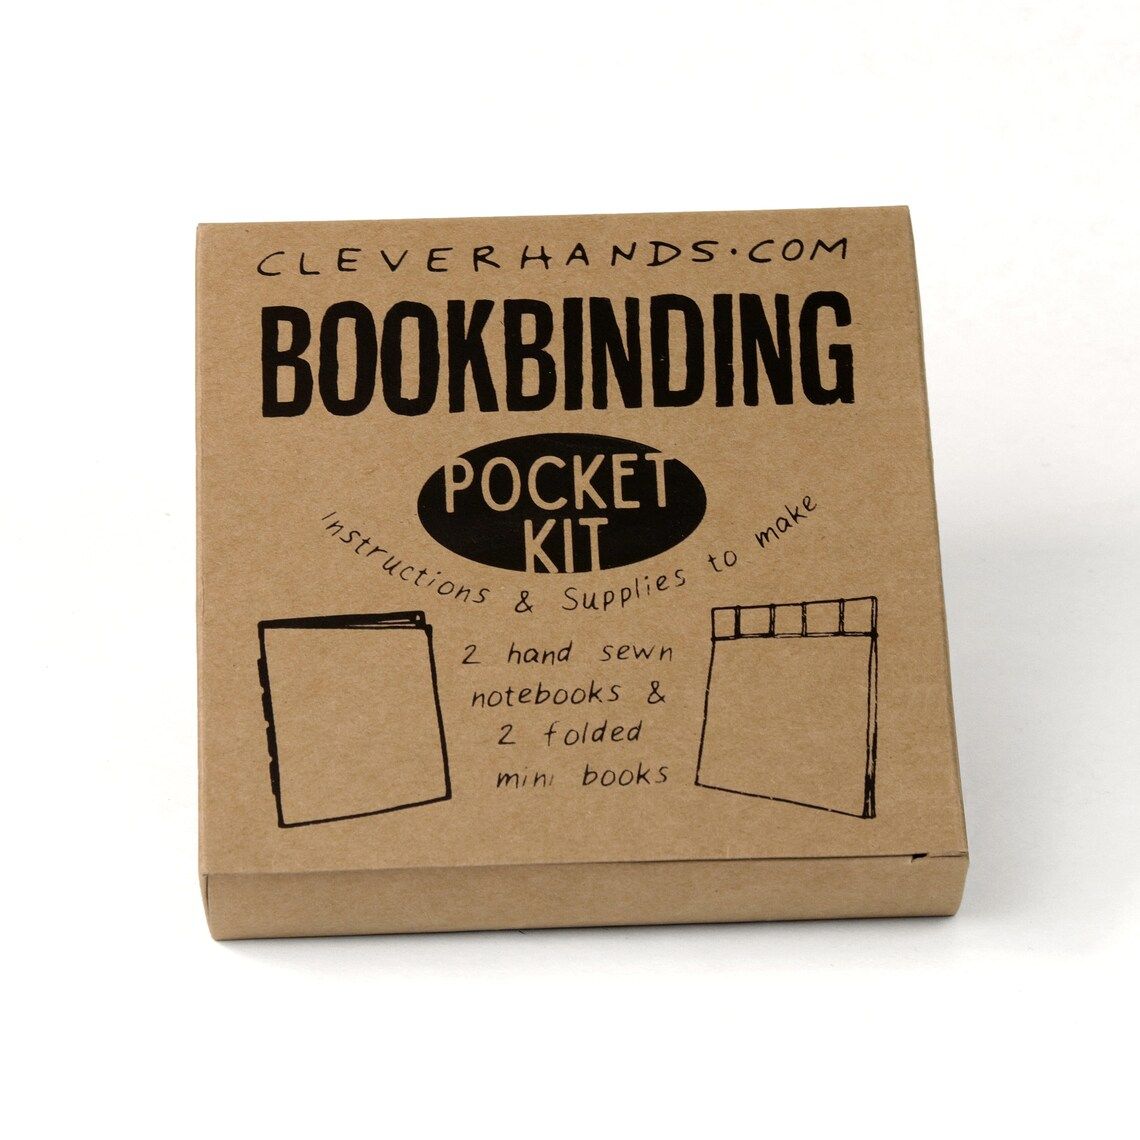 Pocket book binding kit